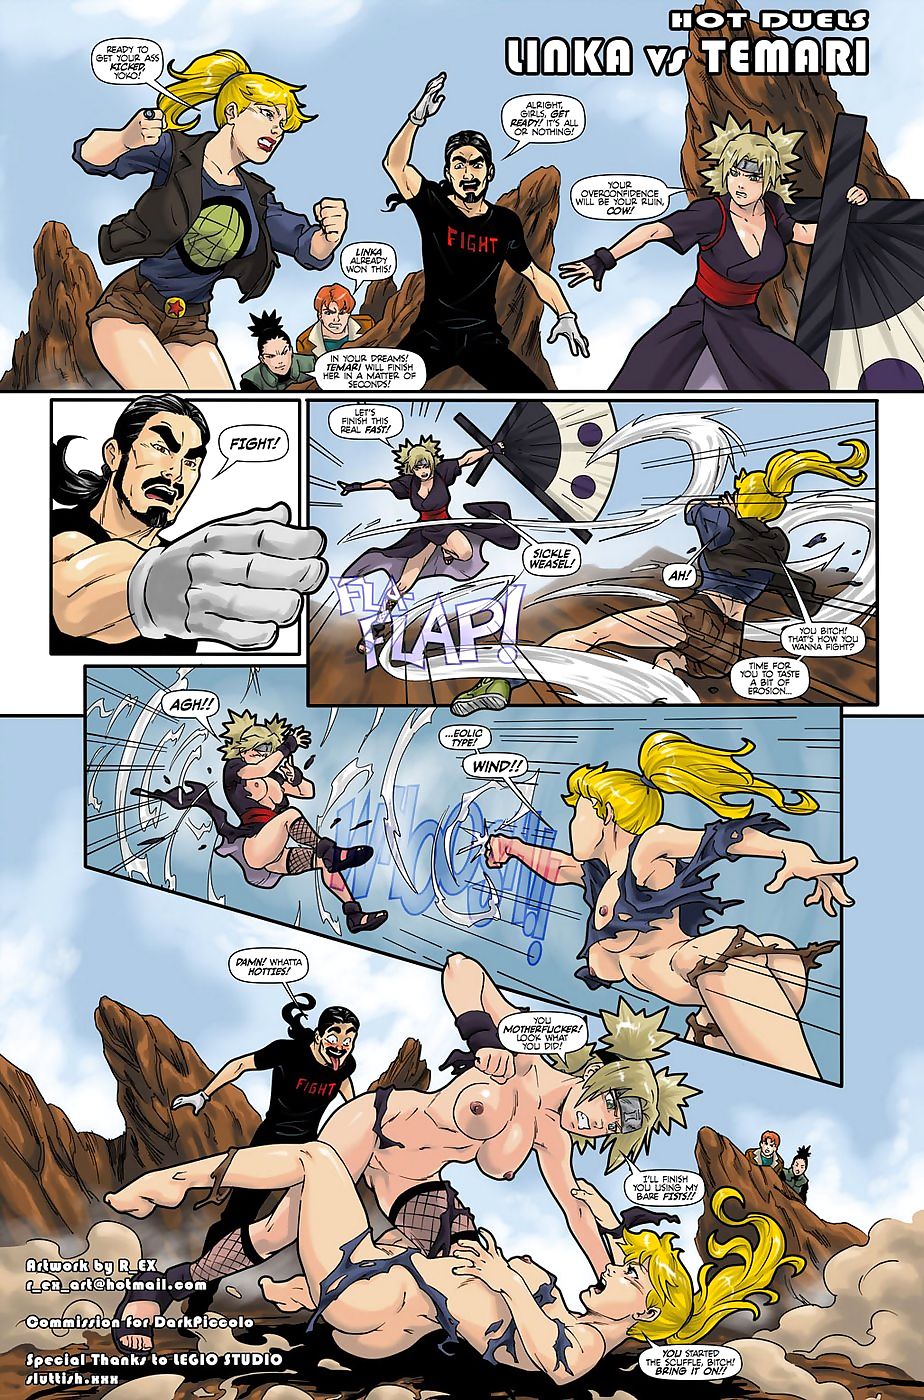 Hot Duels 1- Temari vs Linka page 1